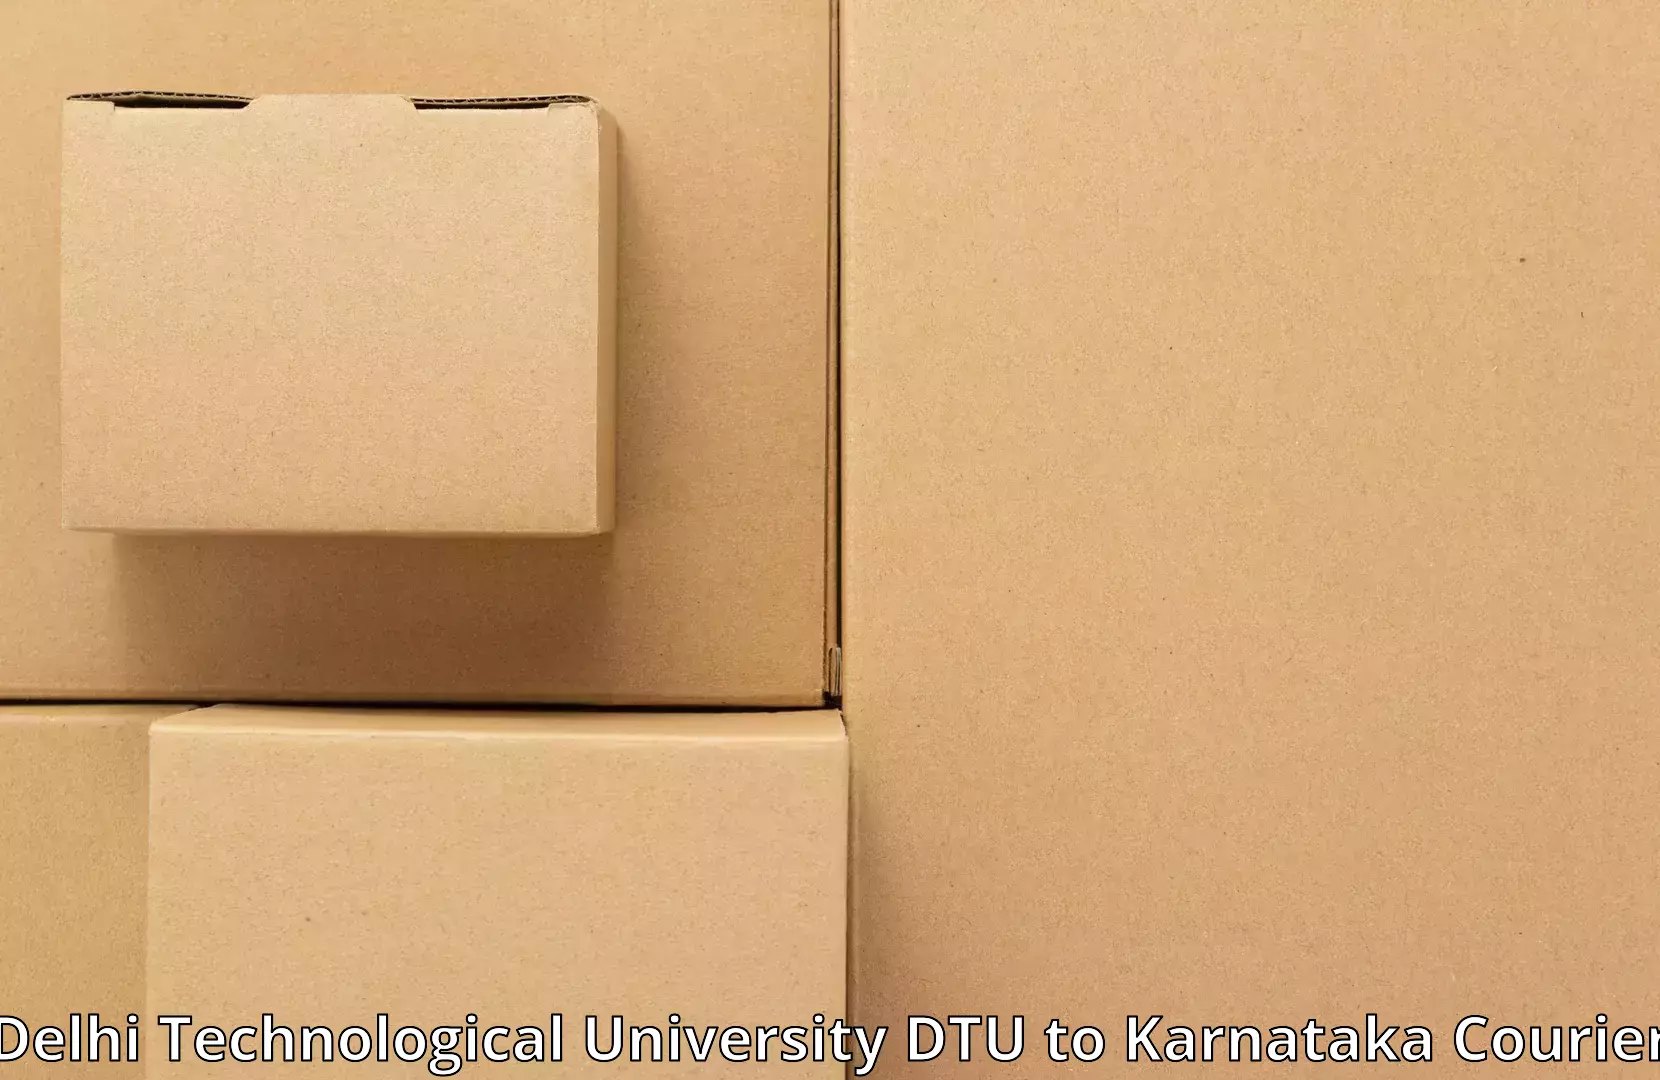 Furniture transport professionals Delhi Technological University DTU to Davangere